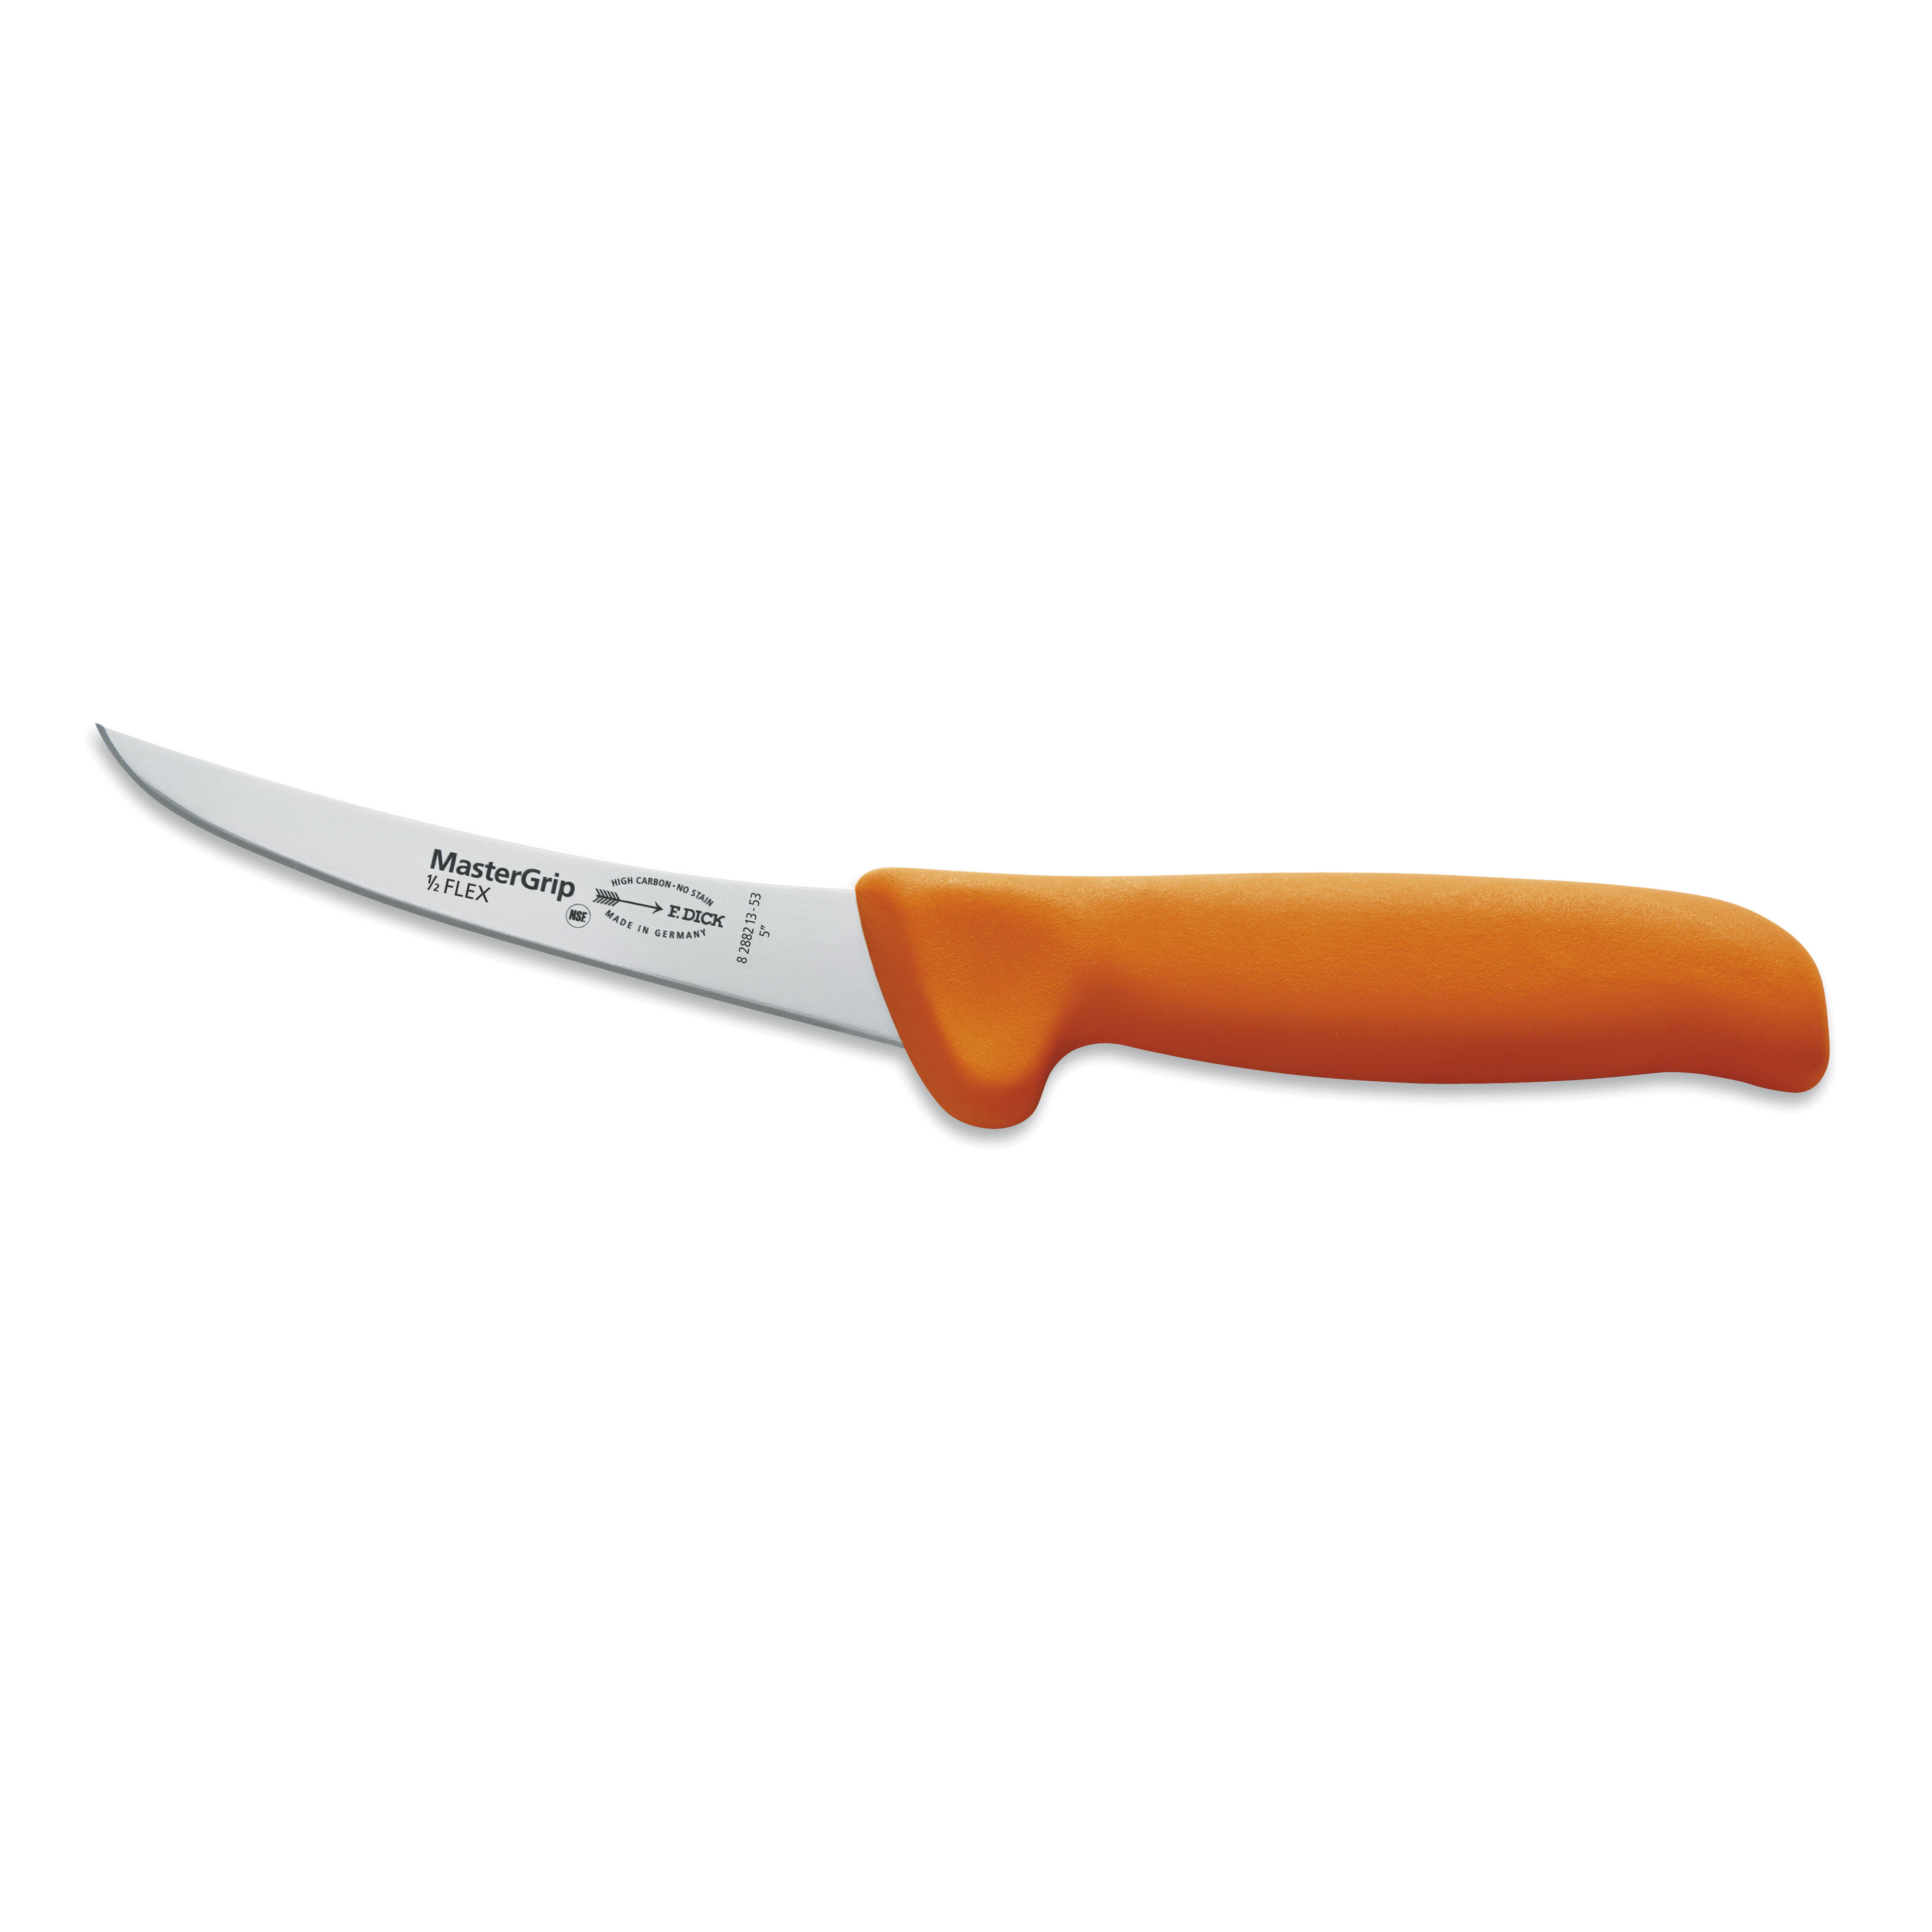 F.Dick MasterGrip orange, Ausbeinmesser, geschweifte Klinge, semi-flexibel, 13 cm, 8288213